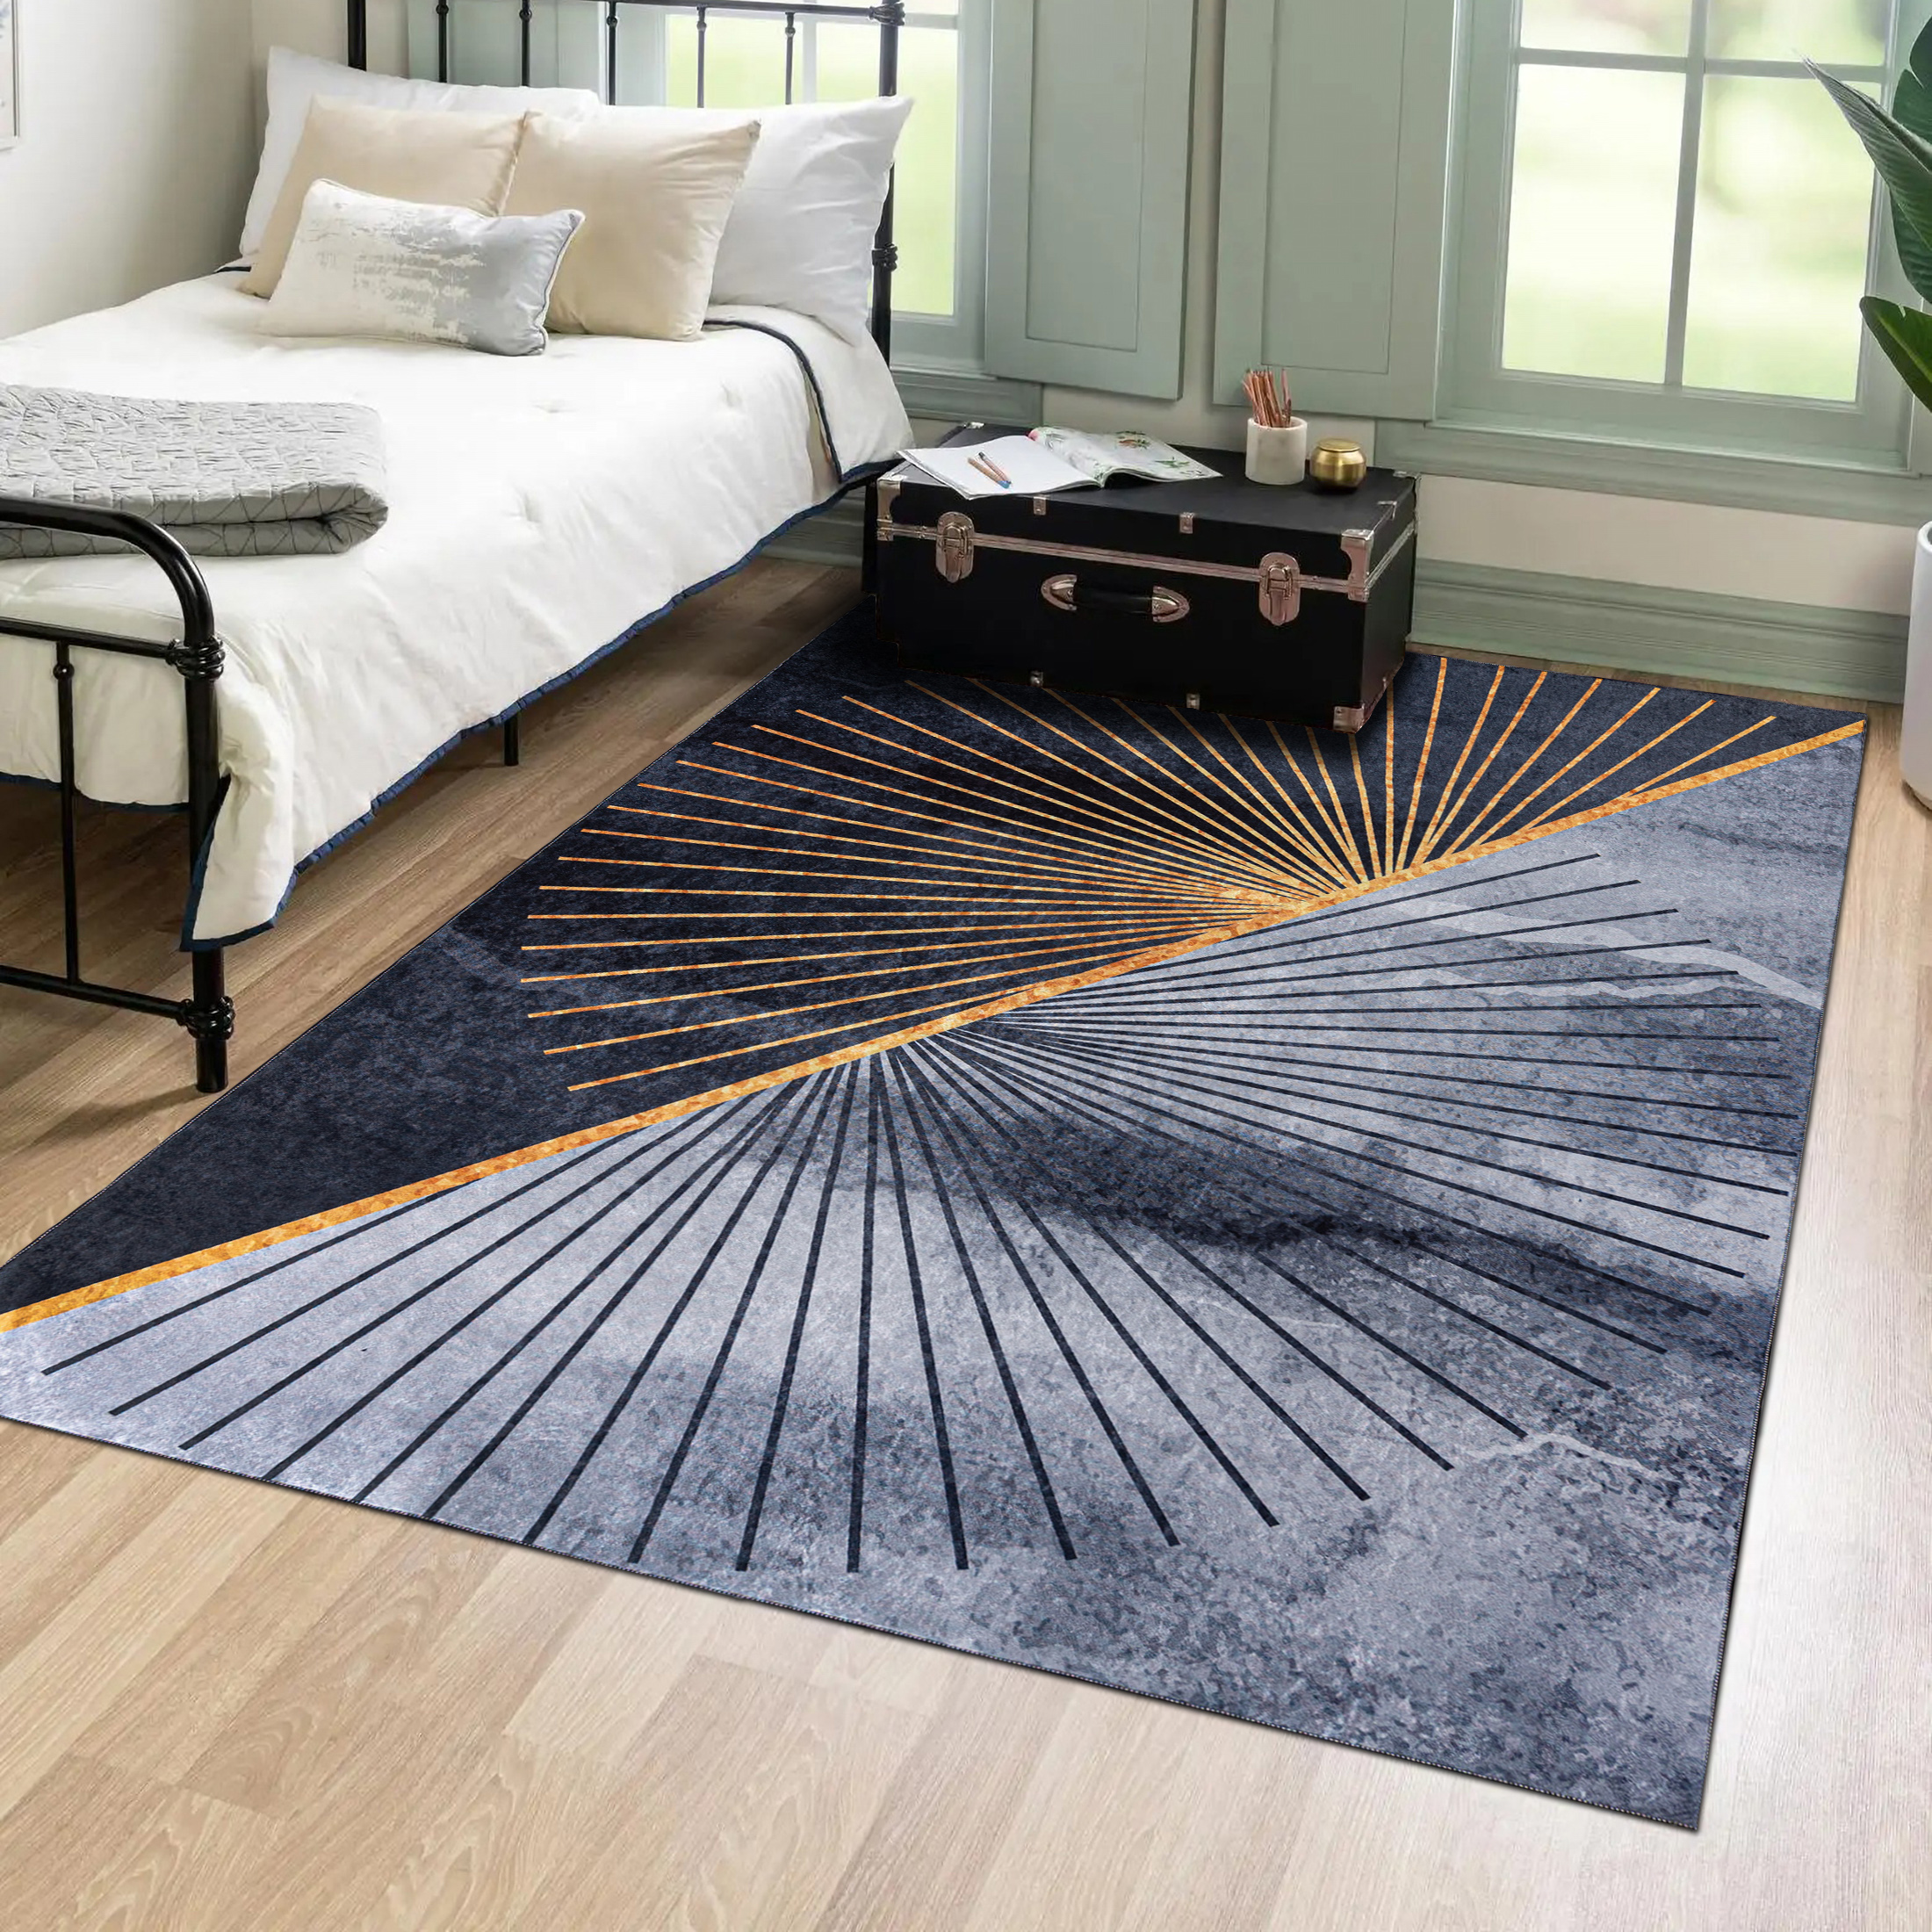 Jak dobrać nowoczesny dywan do wystroju wnętrza? obraz 1 2